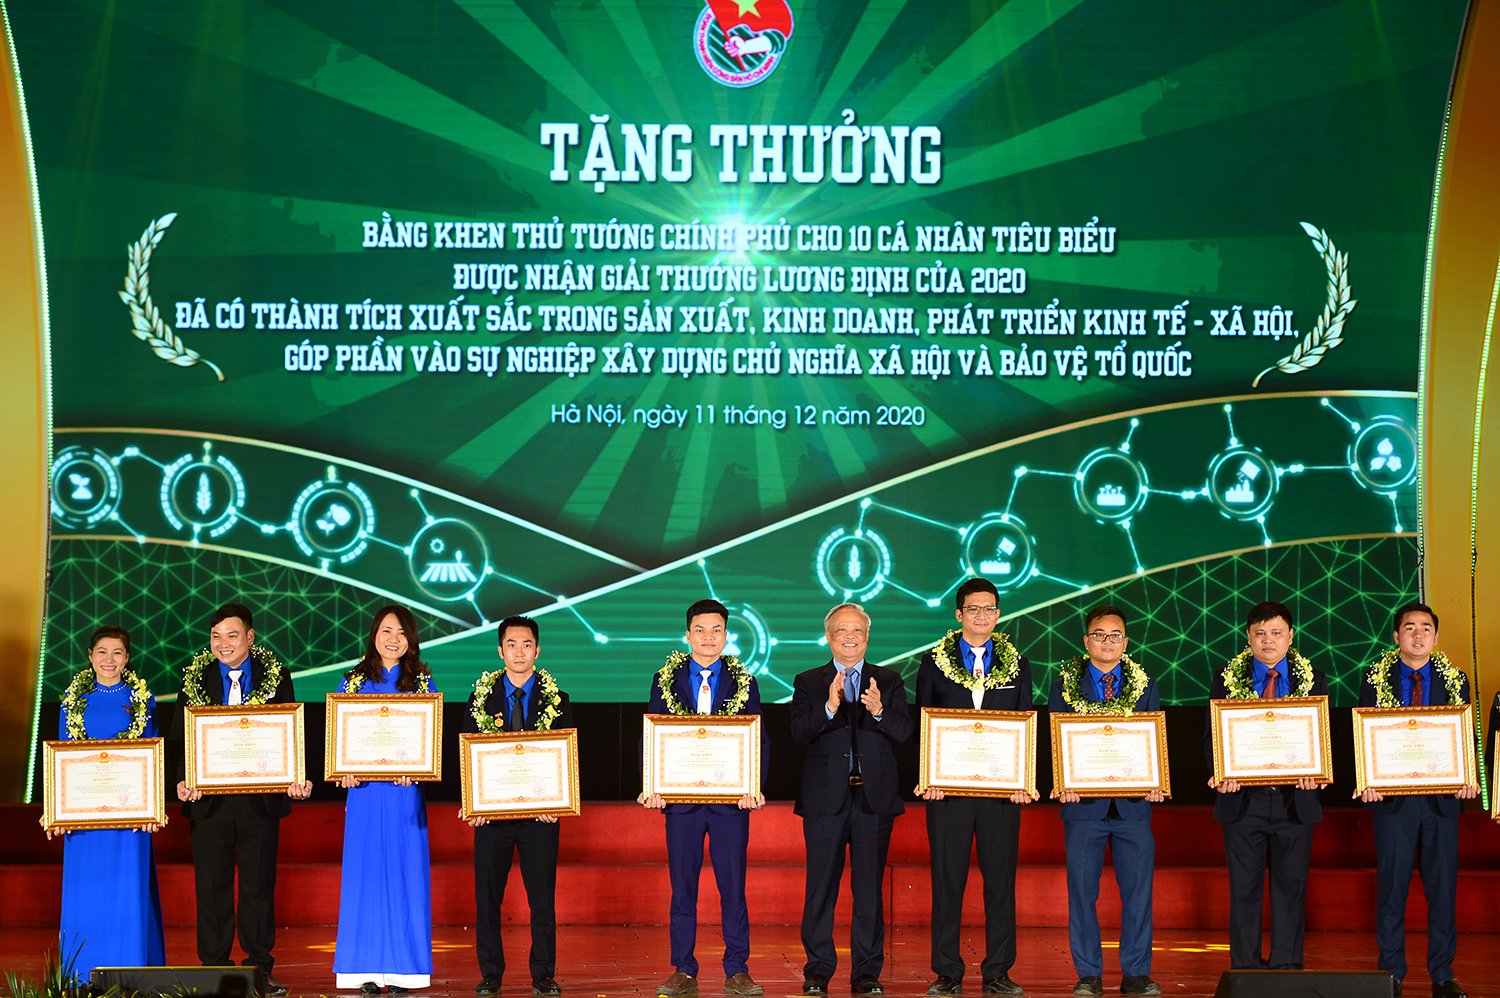 Chị Hiền (đứng thứ 3 từ trái sang) vinh dự là 1 trong 10 gương mặt thanh niên nông thôn xuất sắc nhất năm 2020 được nhận bằng khen của Thủ tướng Chính phủ.